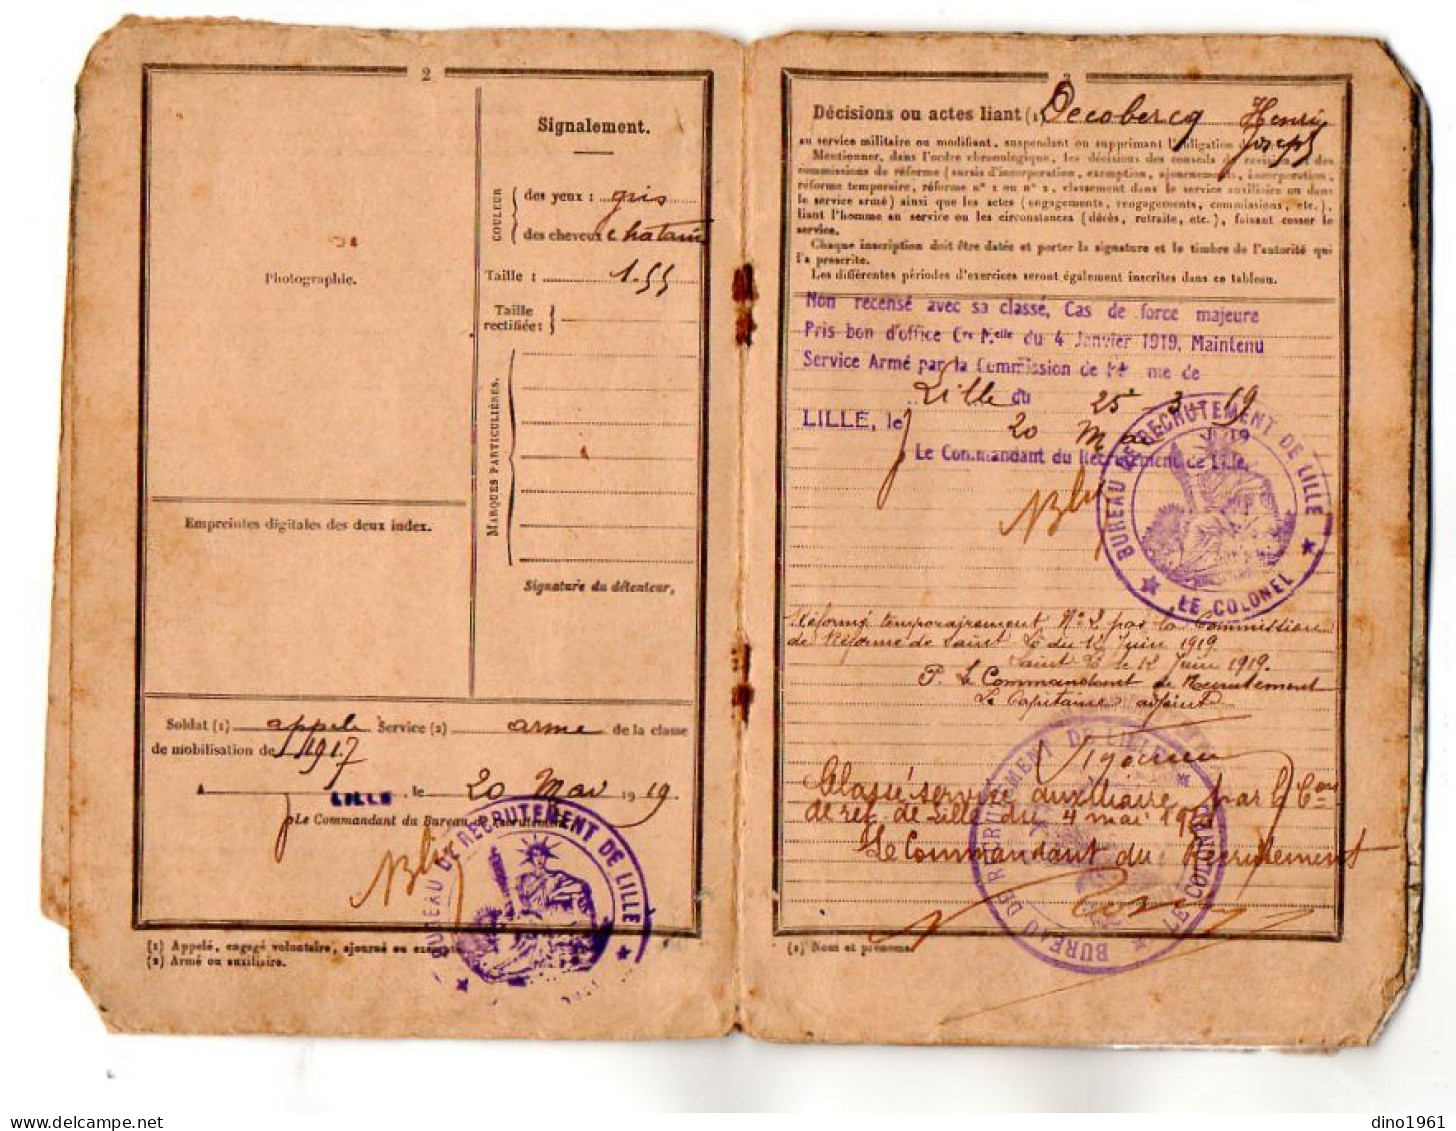 VP22.503 - MILITARIA - LILLE 1919 / 40 - Livret Militaire - Soldat Henri DECOBECQ, Né à TOURCOING, Domicilié à MOUVAUX - Dokumente